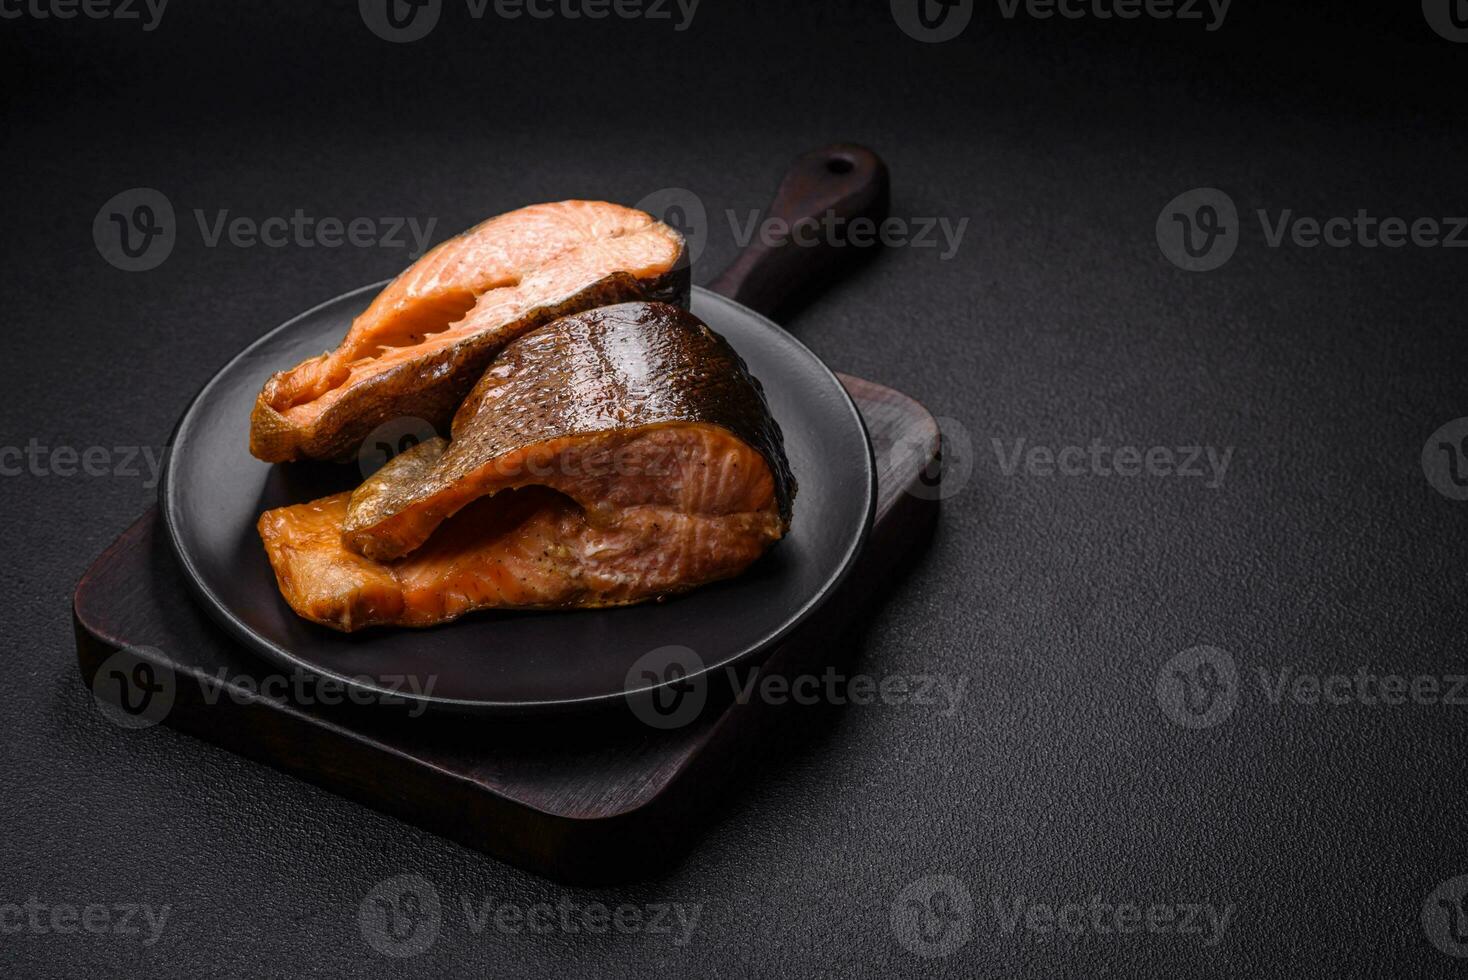 vers gekookt heerlijke zalm steak met specerijen en kruiden gebakken op een grill foto